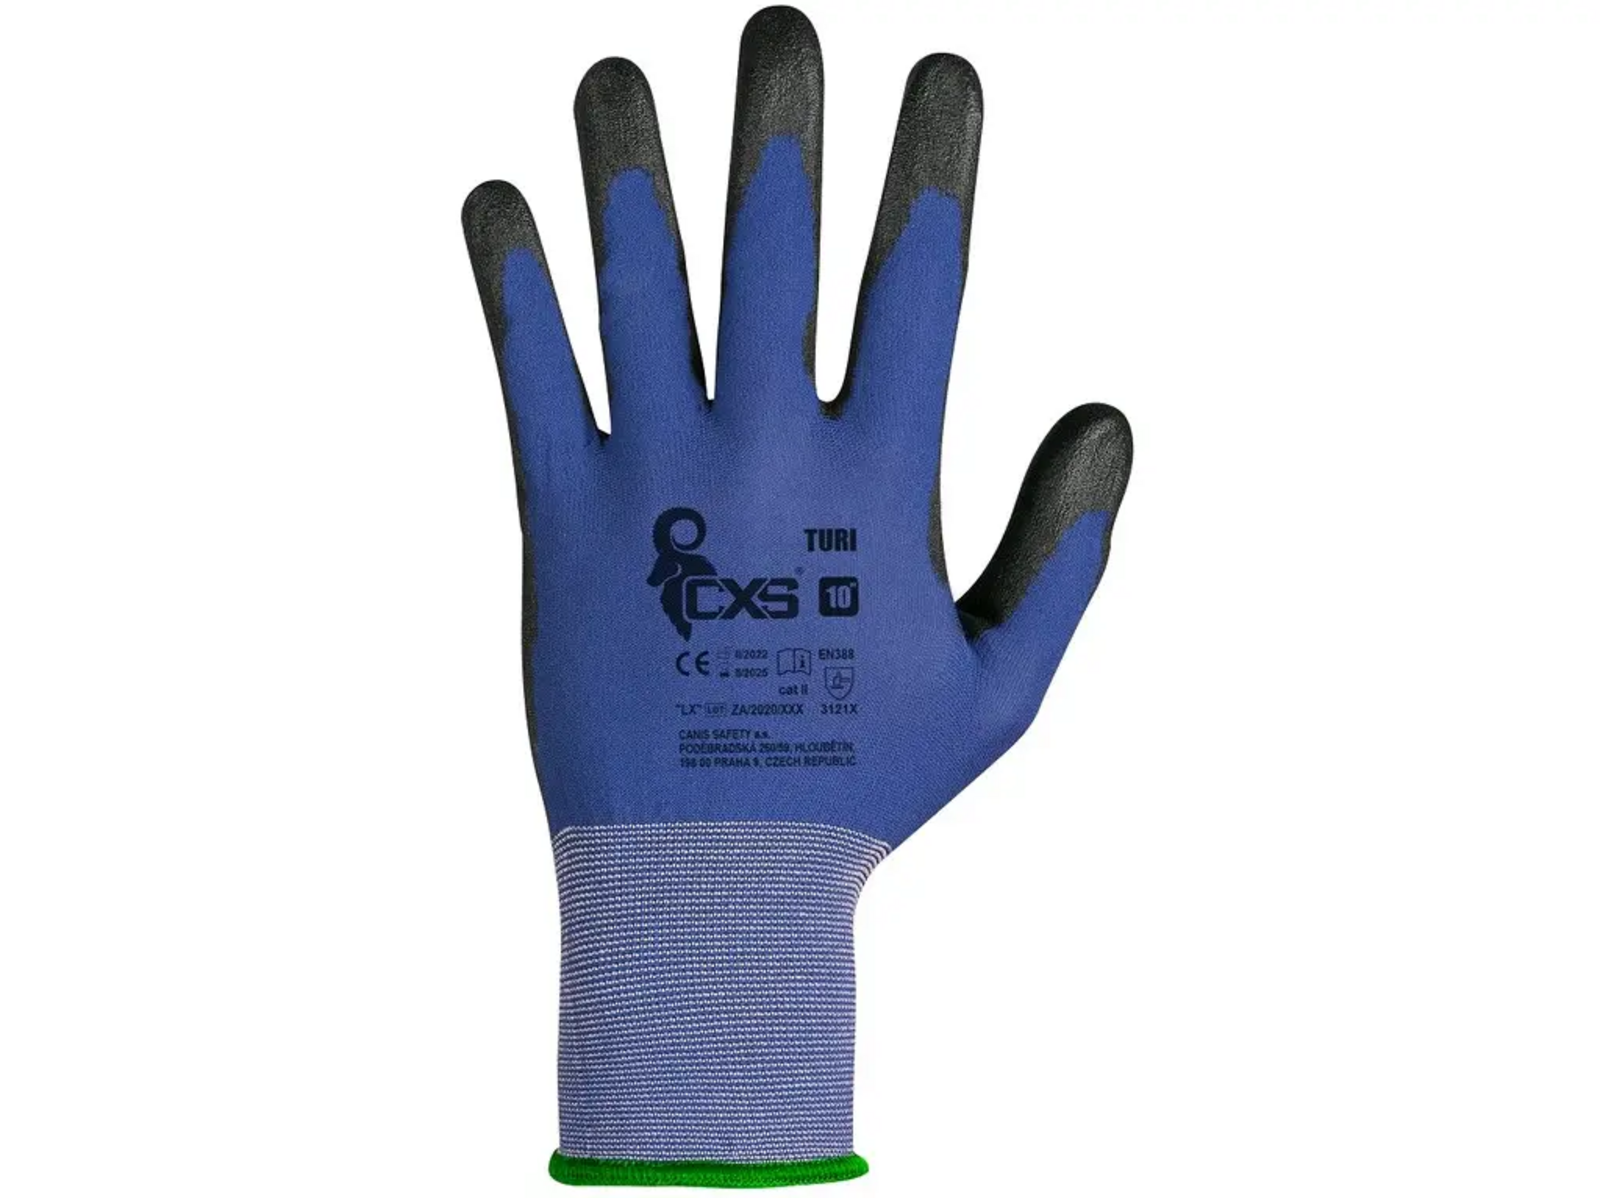 Povrstvené rukavice CXS Turi - veľkosť: 6/XS, farba: modrá/čierna